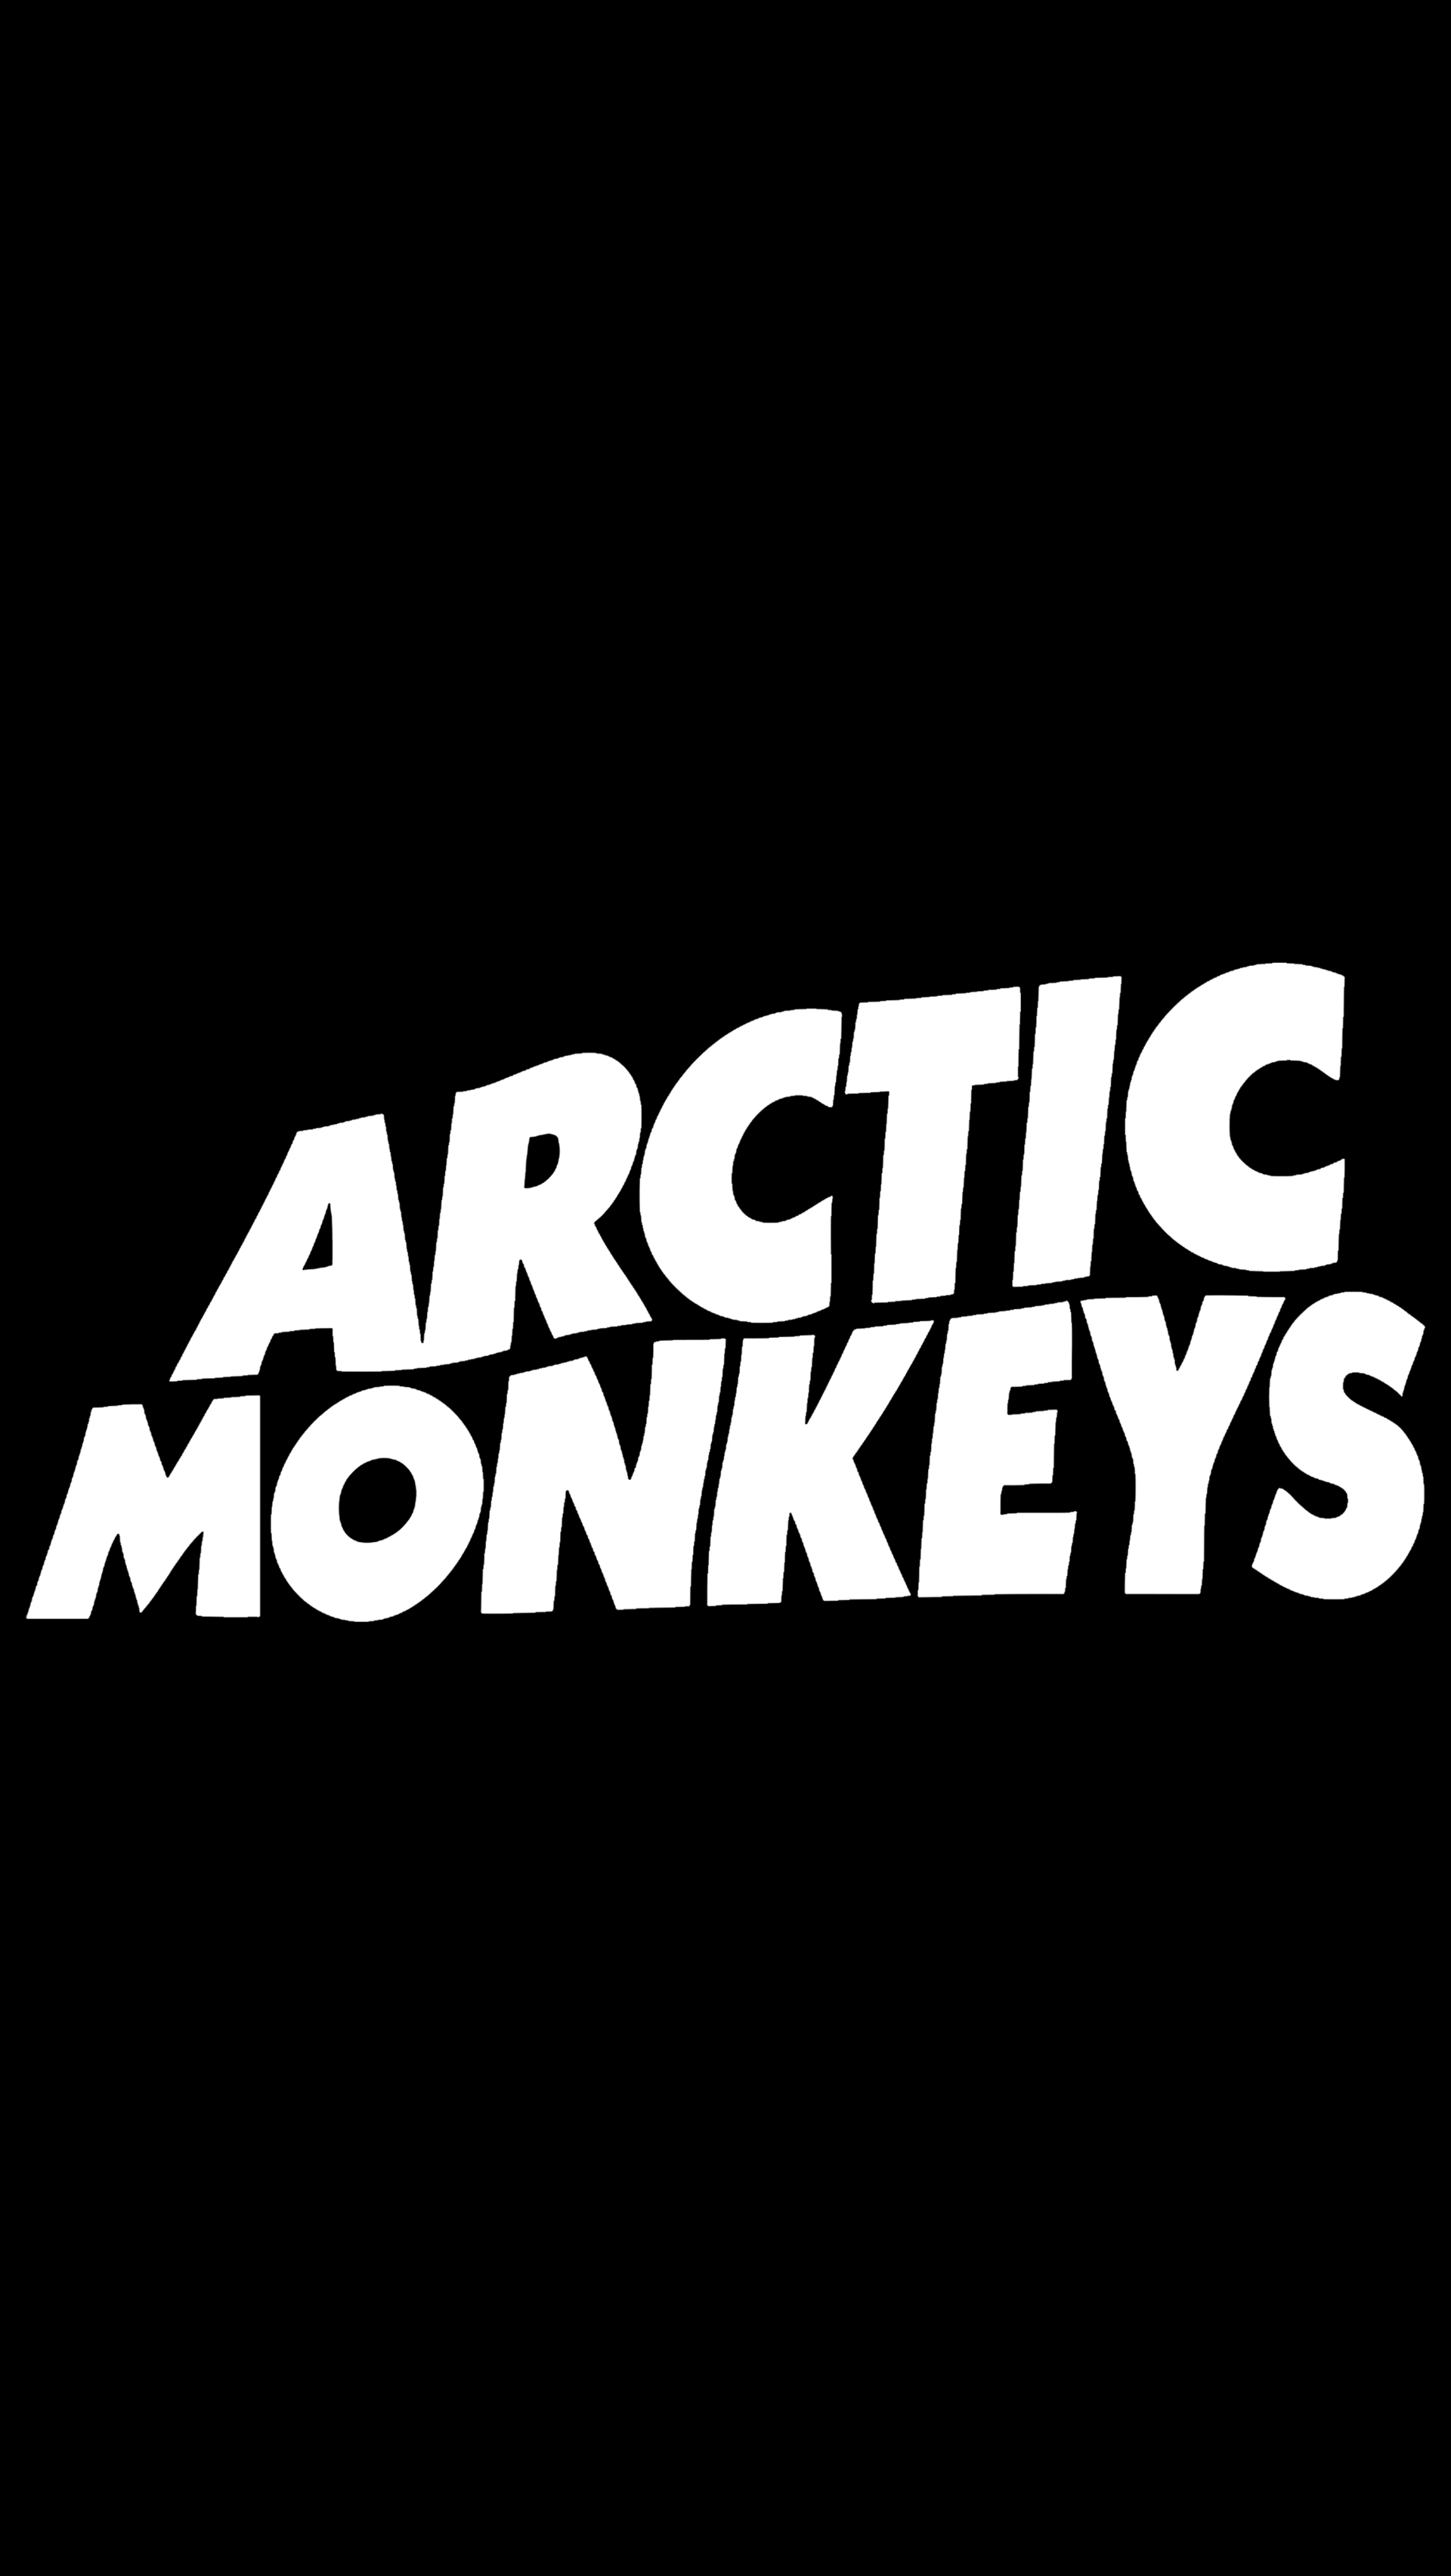 Arctic Monkeys iPhone Wallpaper Arcticmonkeys Jpg